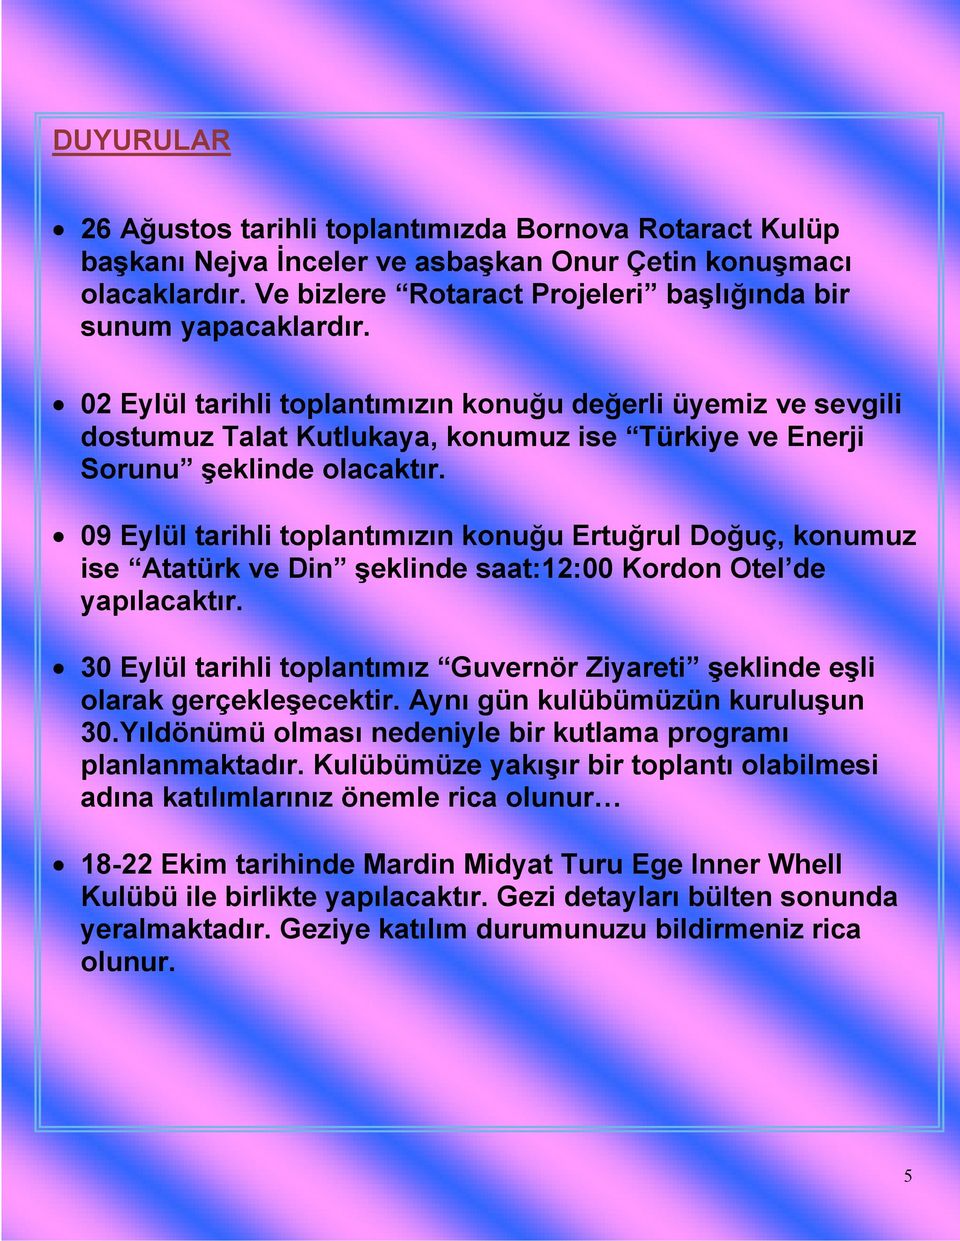 09 Eylül tarihli toplantımızın konuğu Ertuğrul Doğuç, konumuz ise Atatürk ve Din şeklinde saat:12:00 Kordon Otel de yapılacaktır.